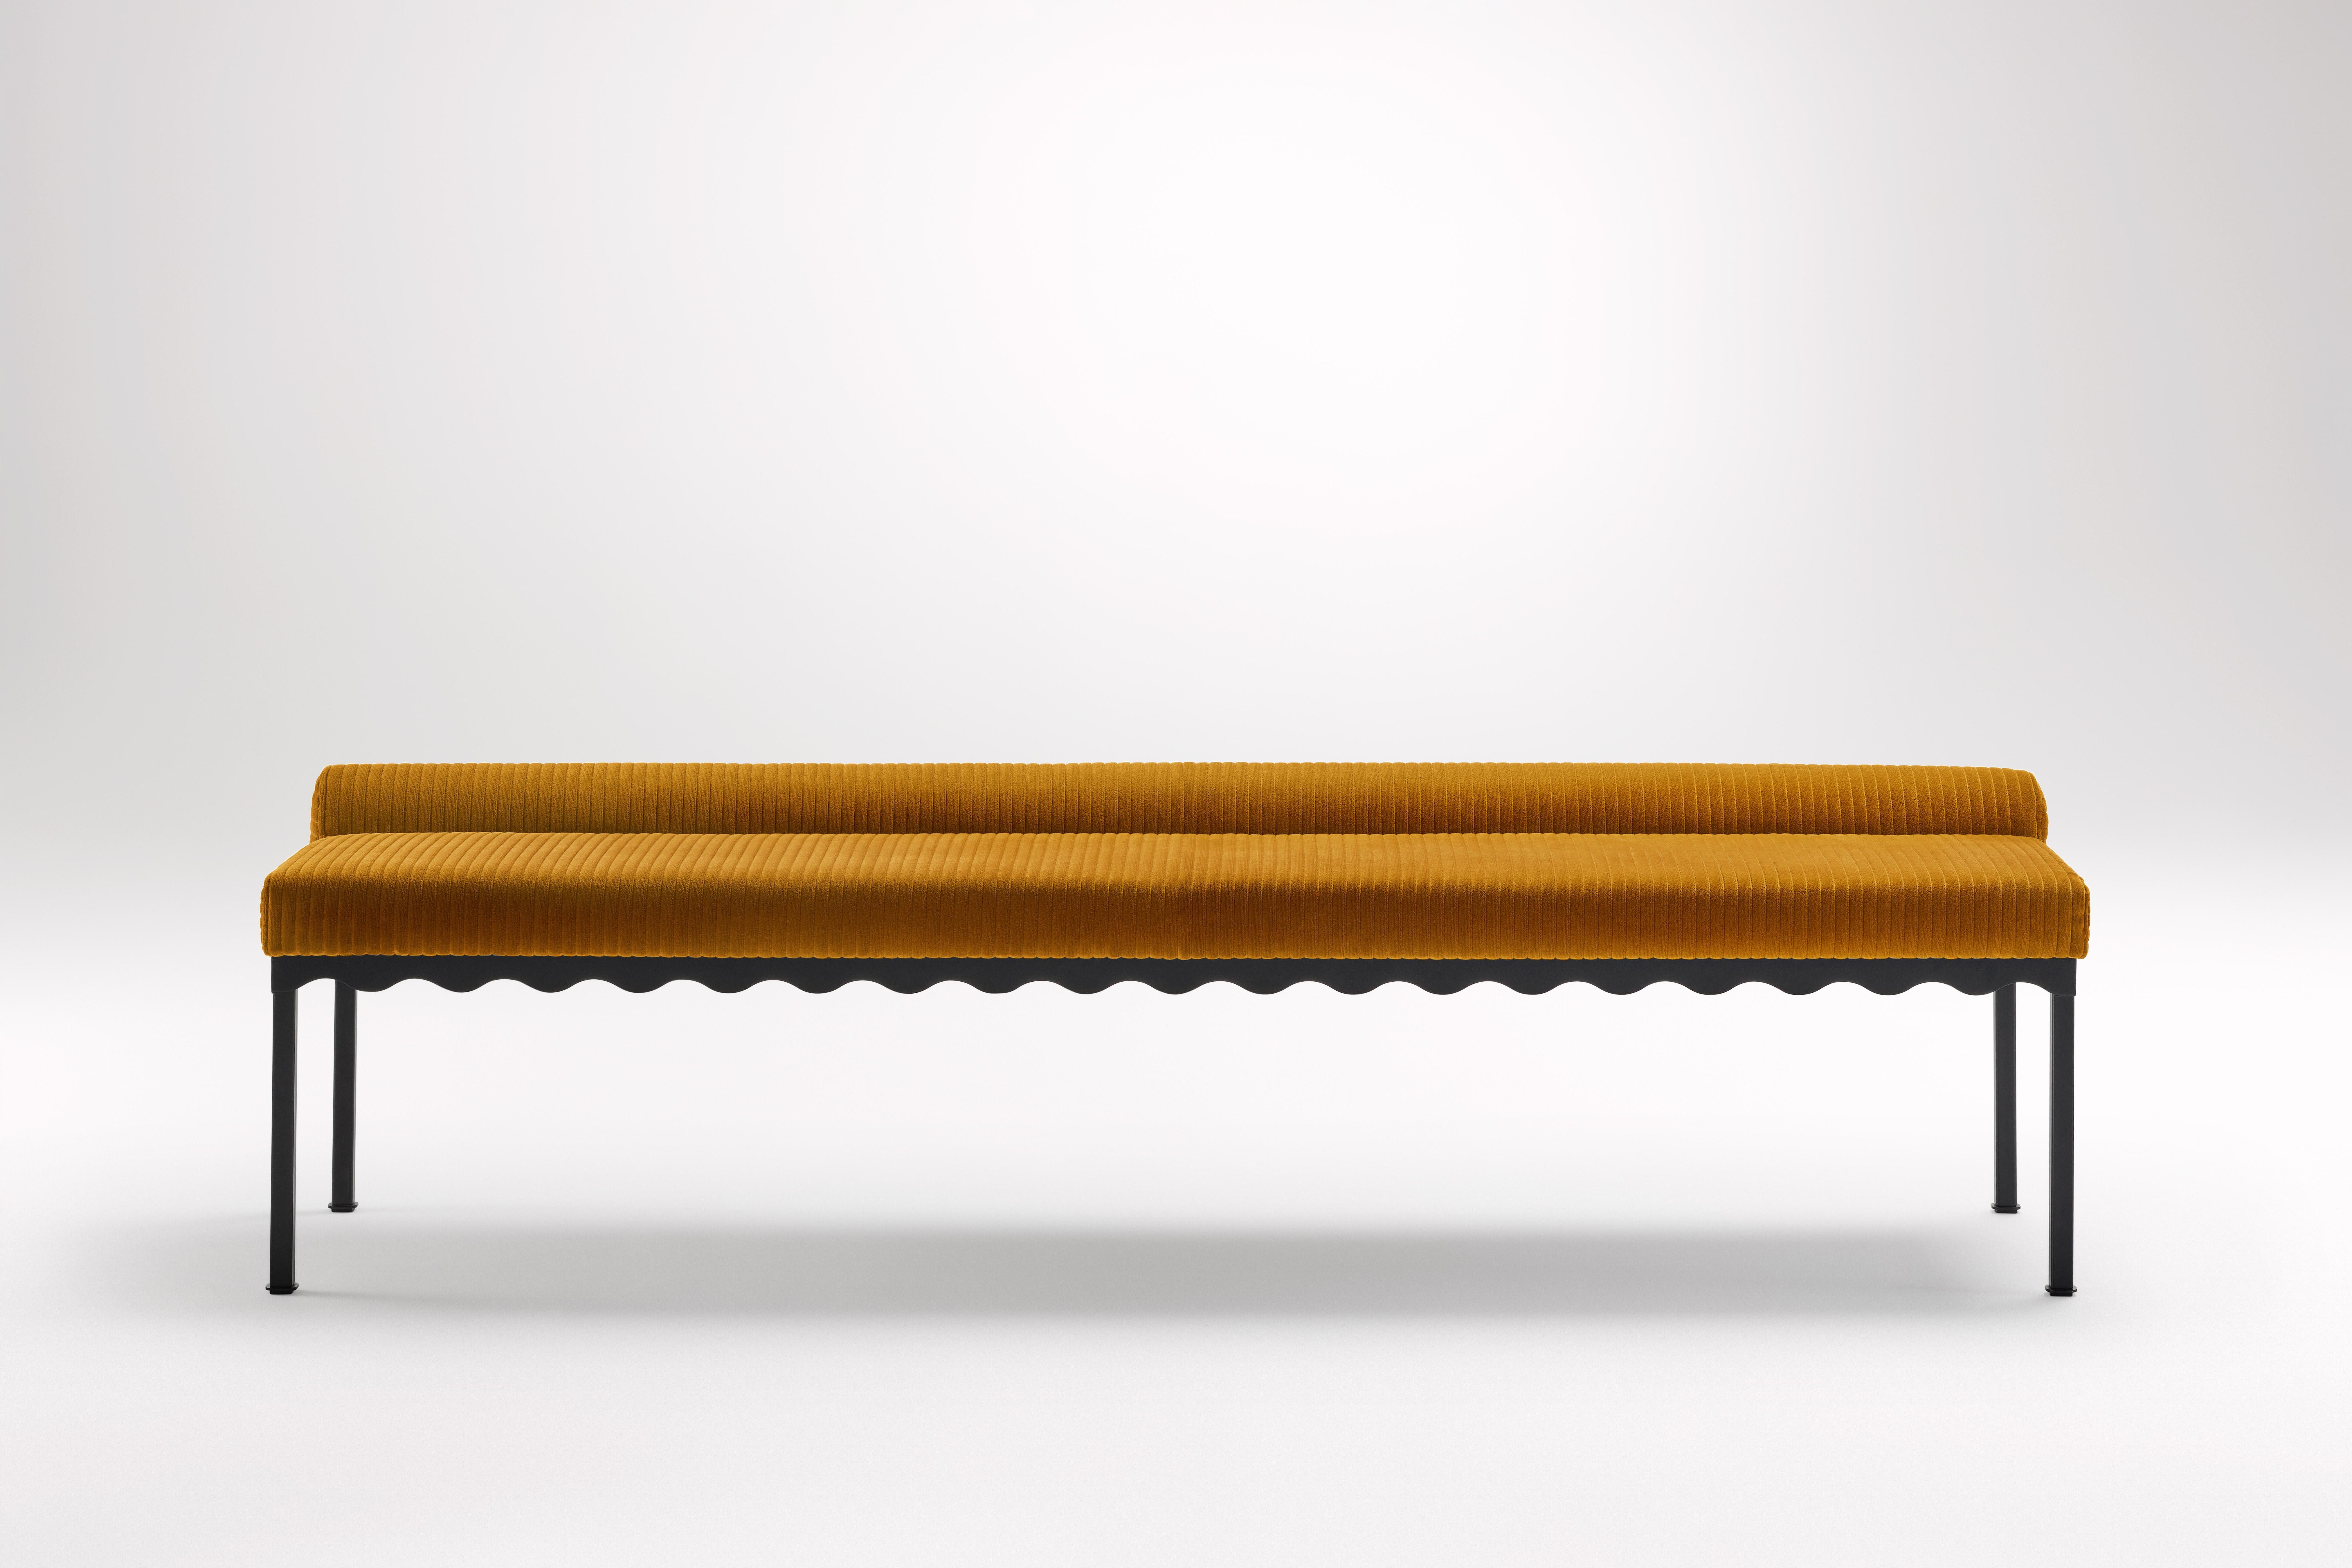 Banc Mikado Bellini 2040 de Coco Flip
Dimensions : D 204 x L 54 x H 52,5 cm
MATERIAL : Bois / Plateaux rembourrés, Cadre en acier peint par poudrage. 
Poids : 30 kg
Finitions du cadre : Noir Textura.

Coco Flip est un studio de design de meubles et